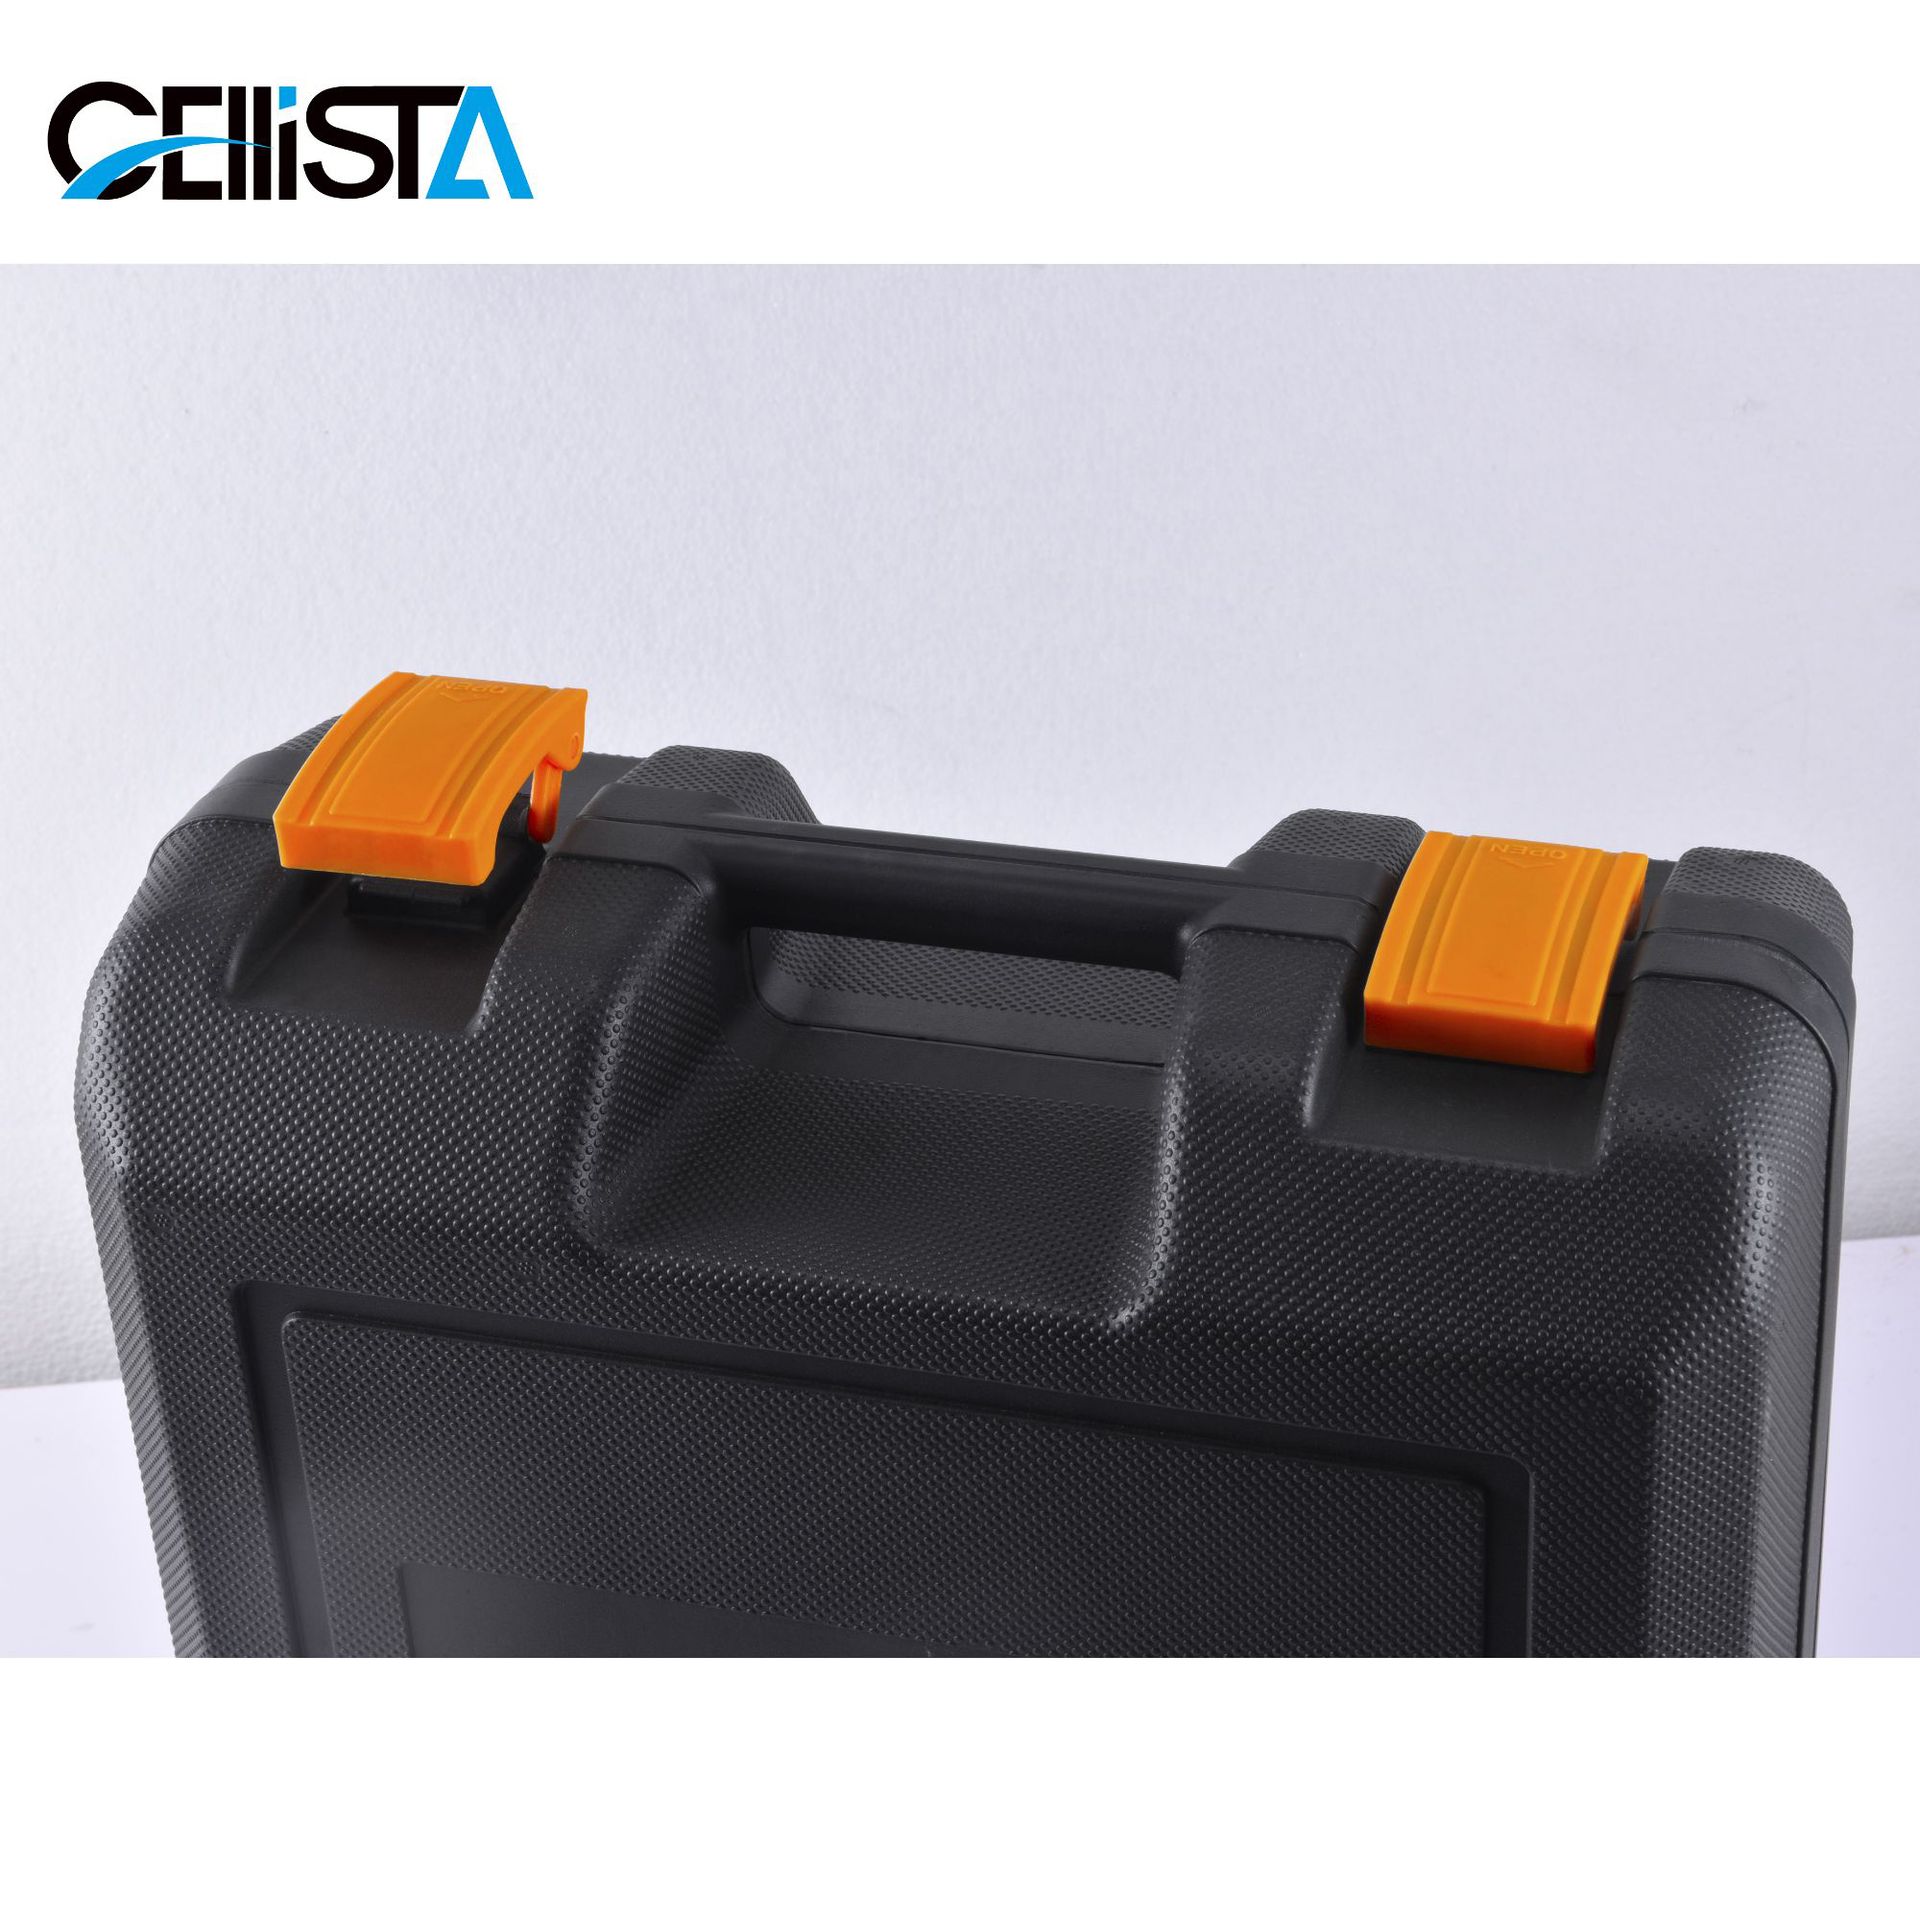 Cellista Cellista Portable Butane Gas Stove with Portable Box